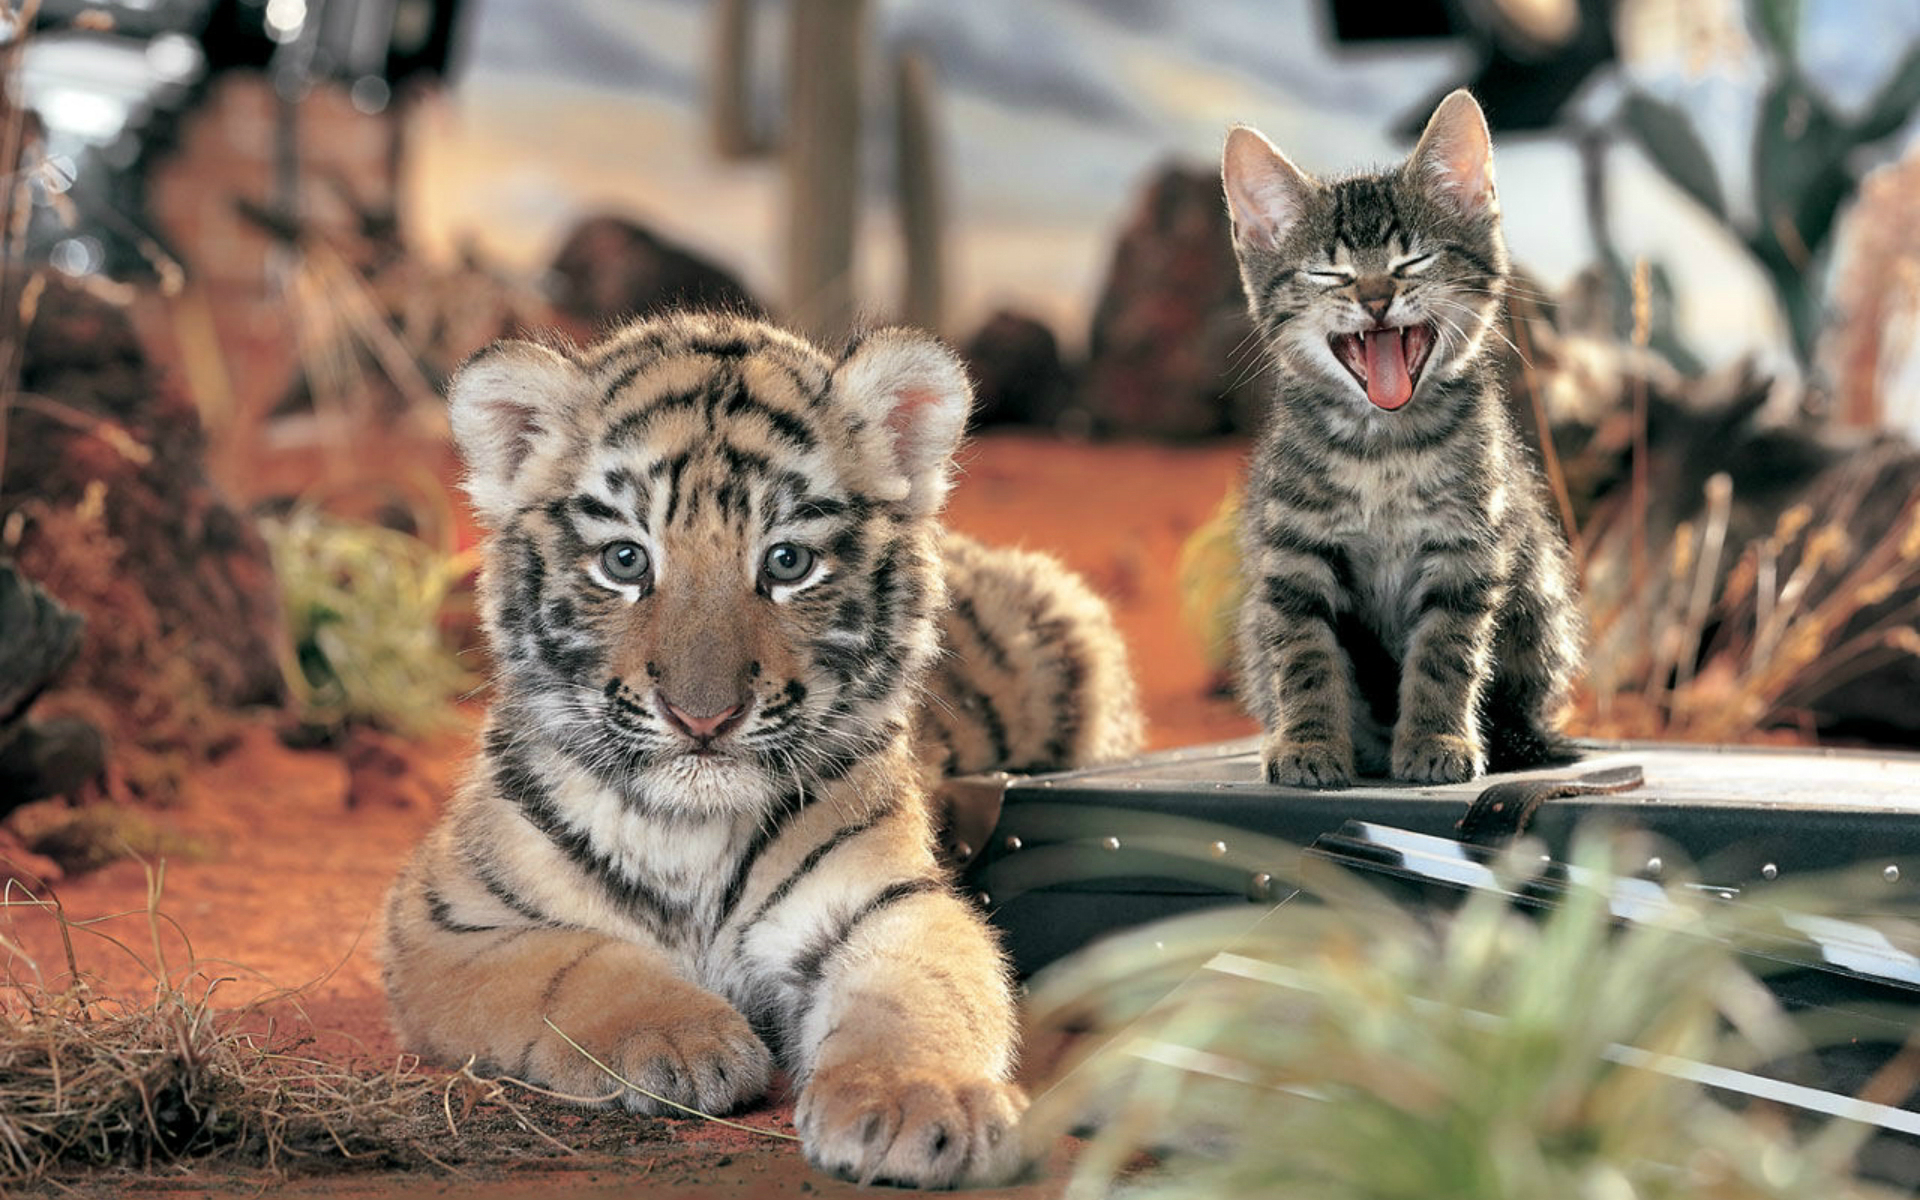 Tiger cub yawning kitty